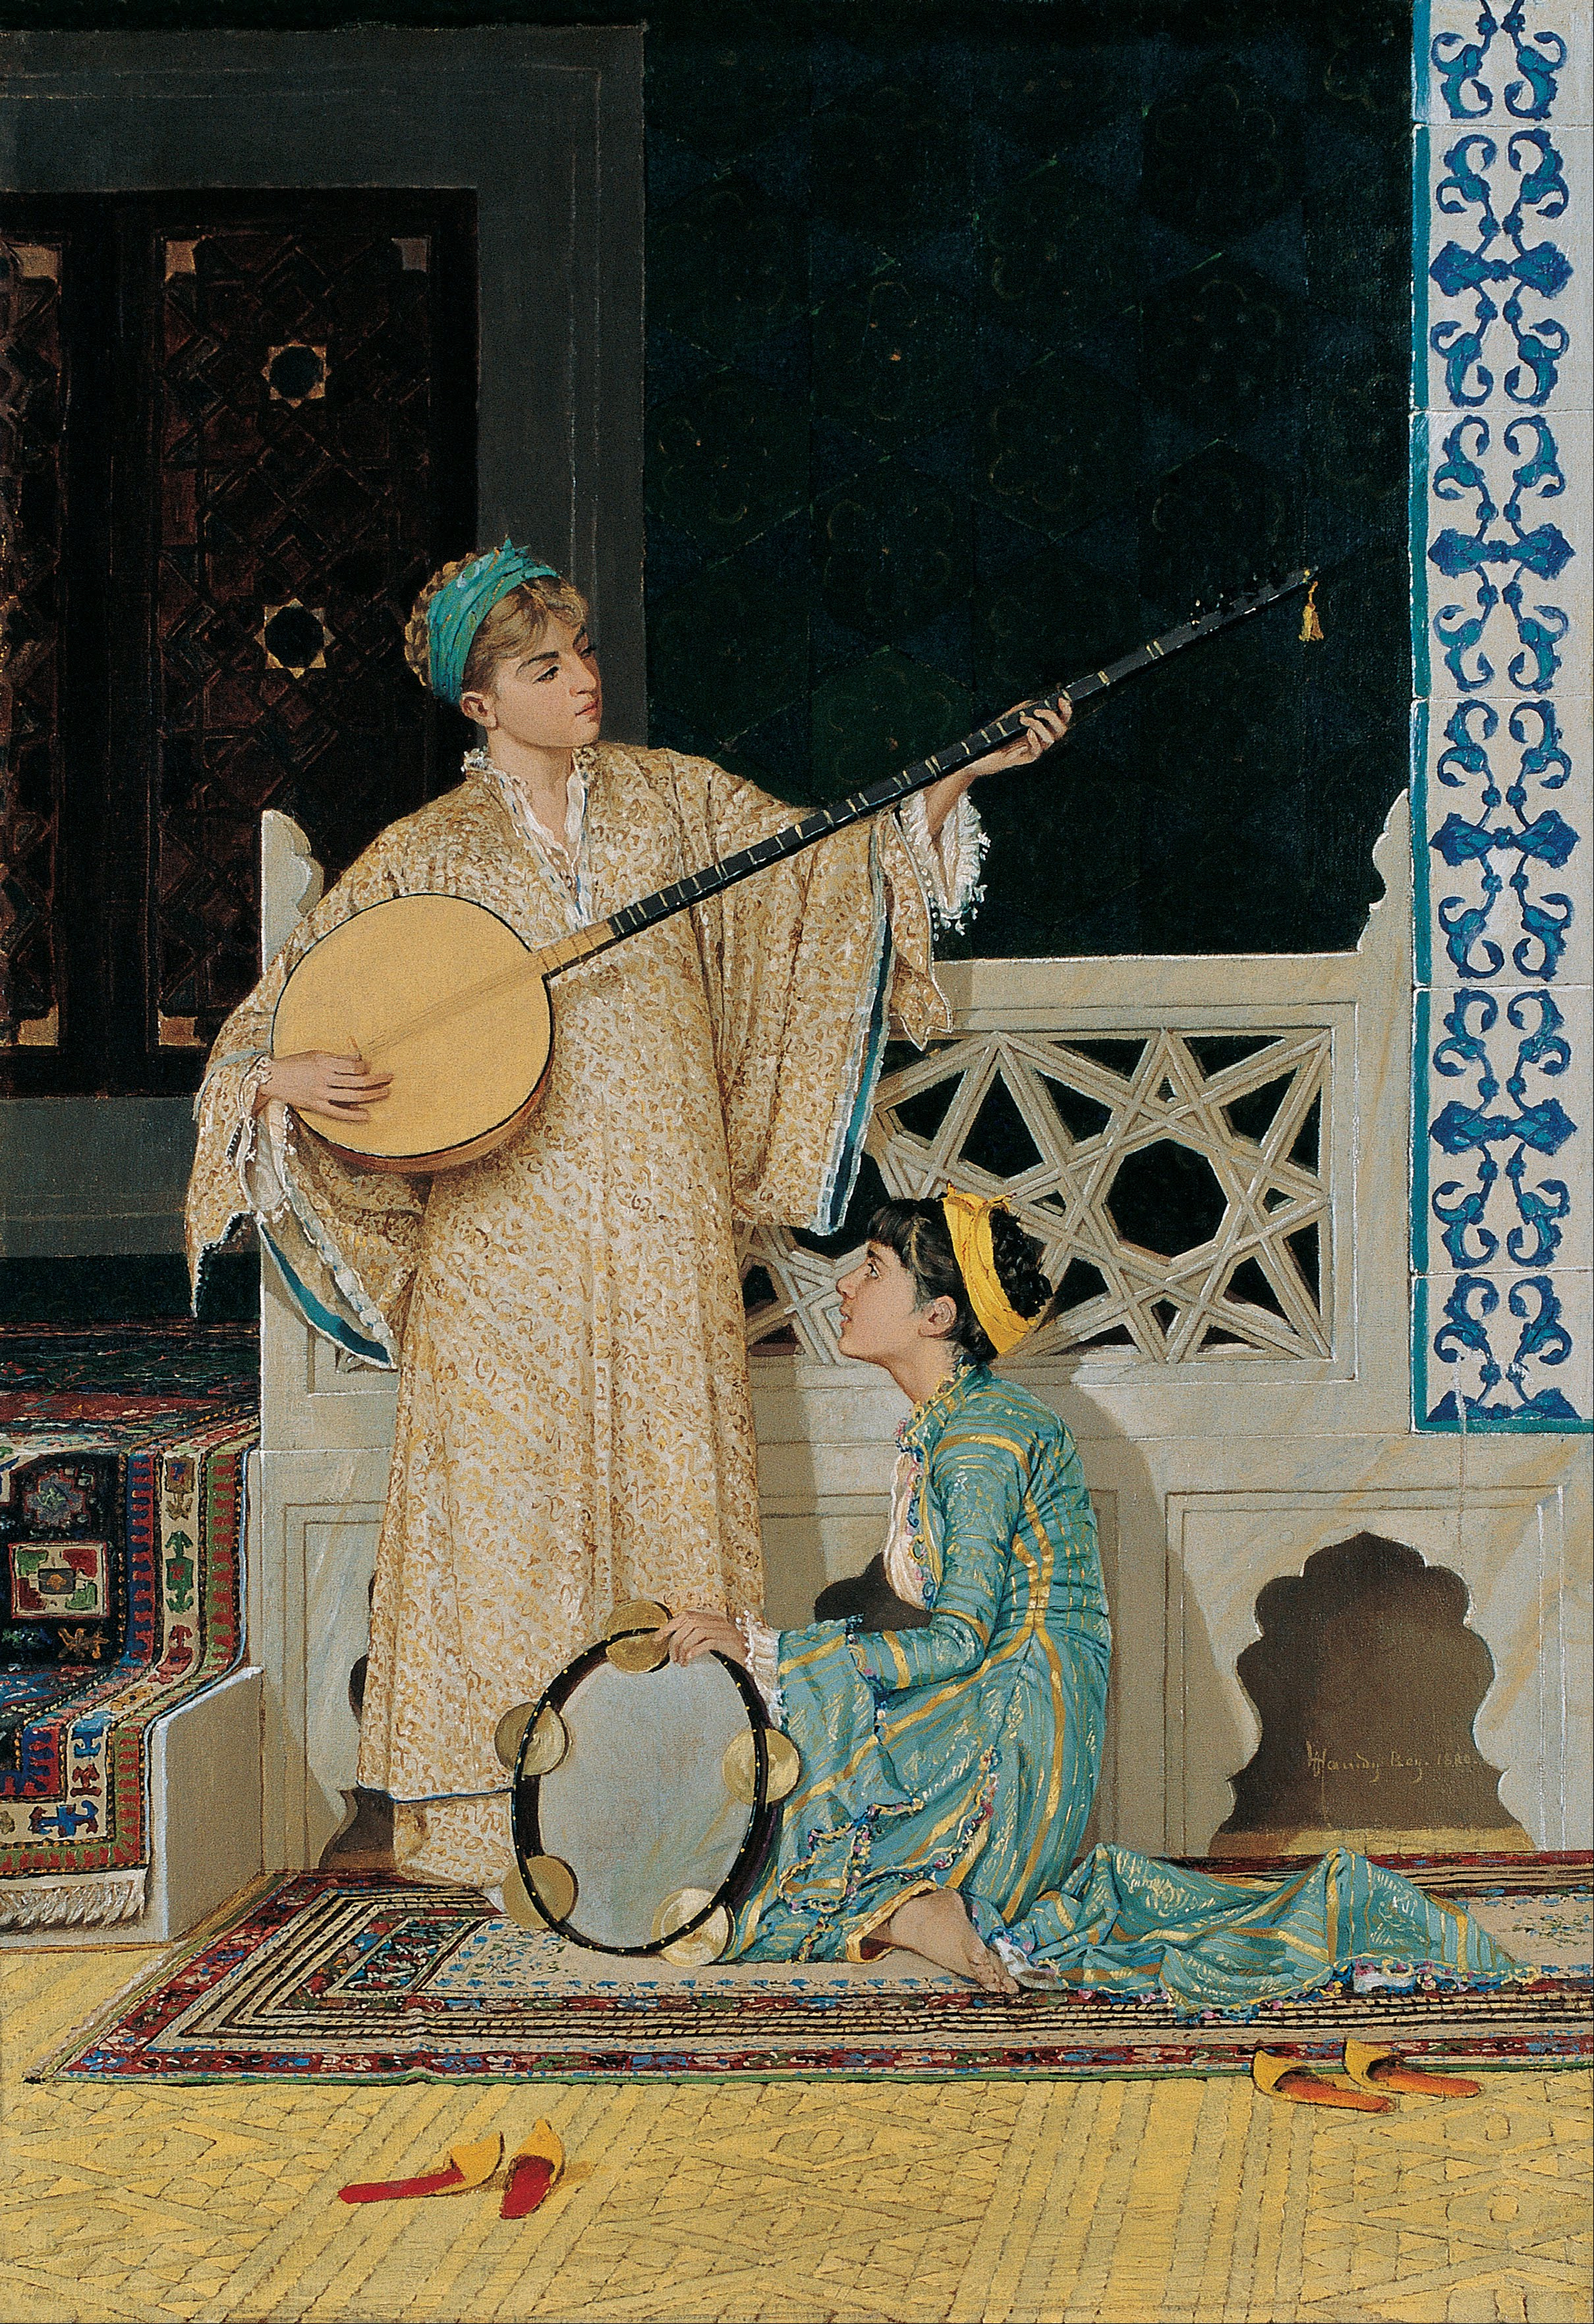 فتاتان موسيقيتان by Osman Hamdi Bey - النصف الثاني من القرن التاسع عشر - 58 x 39 سم 